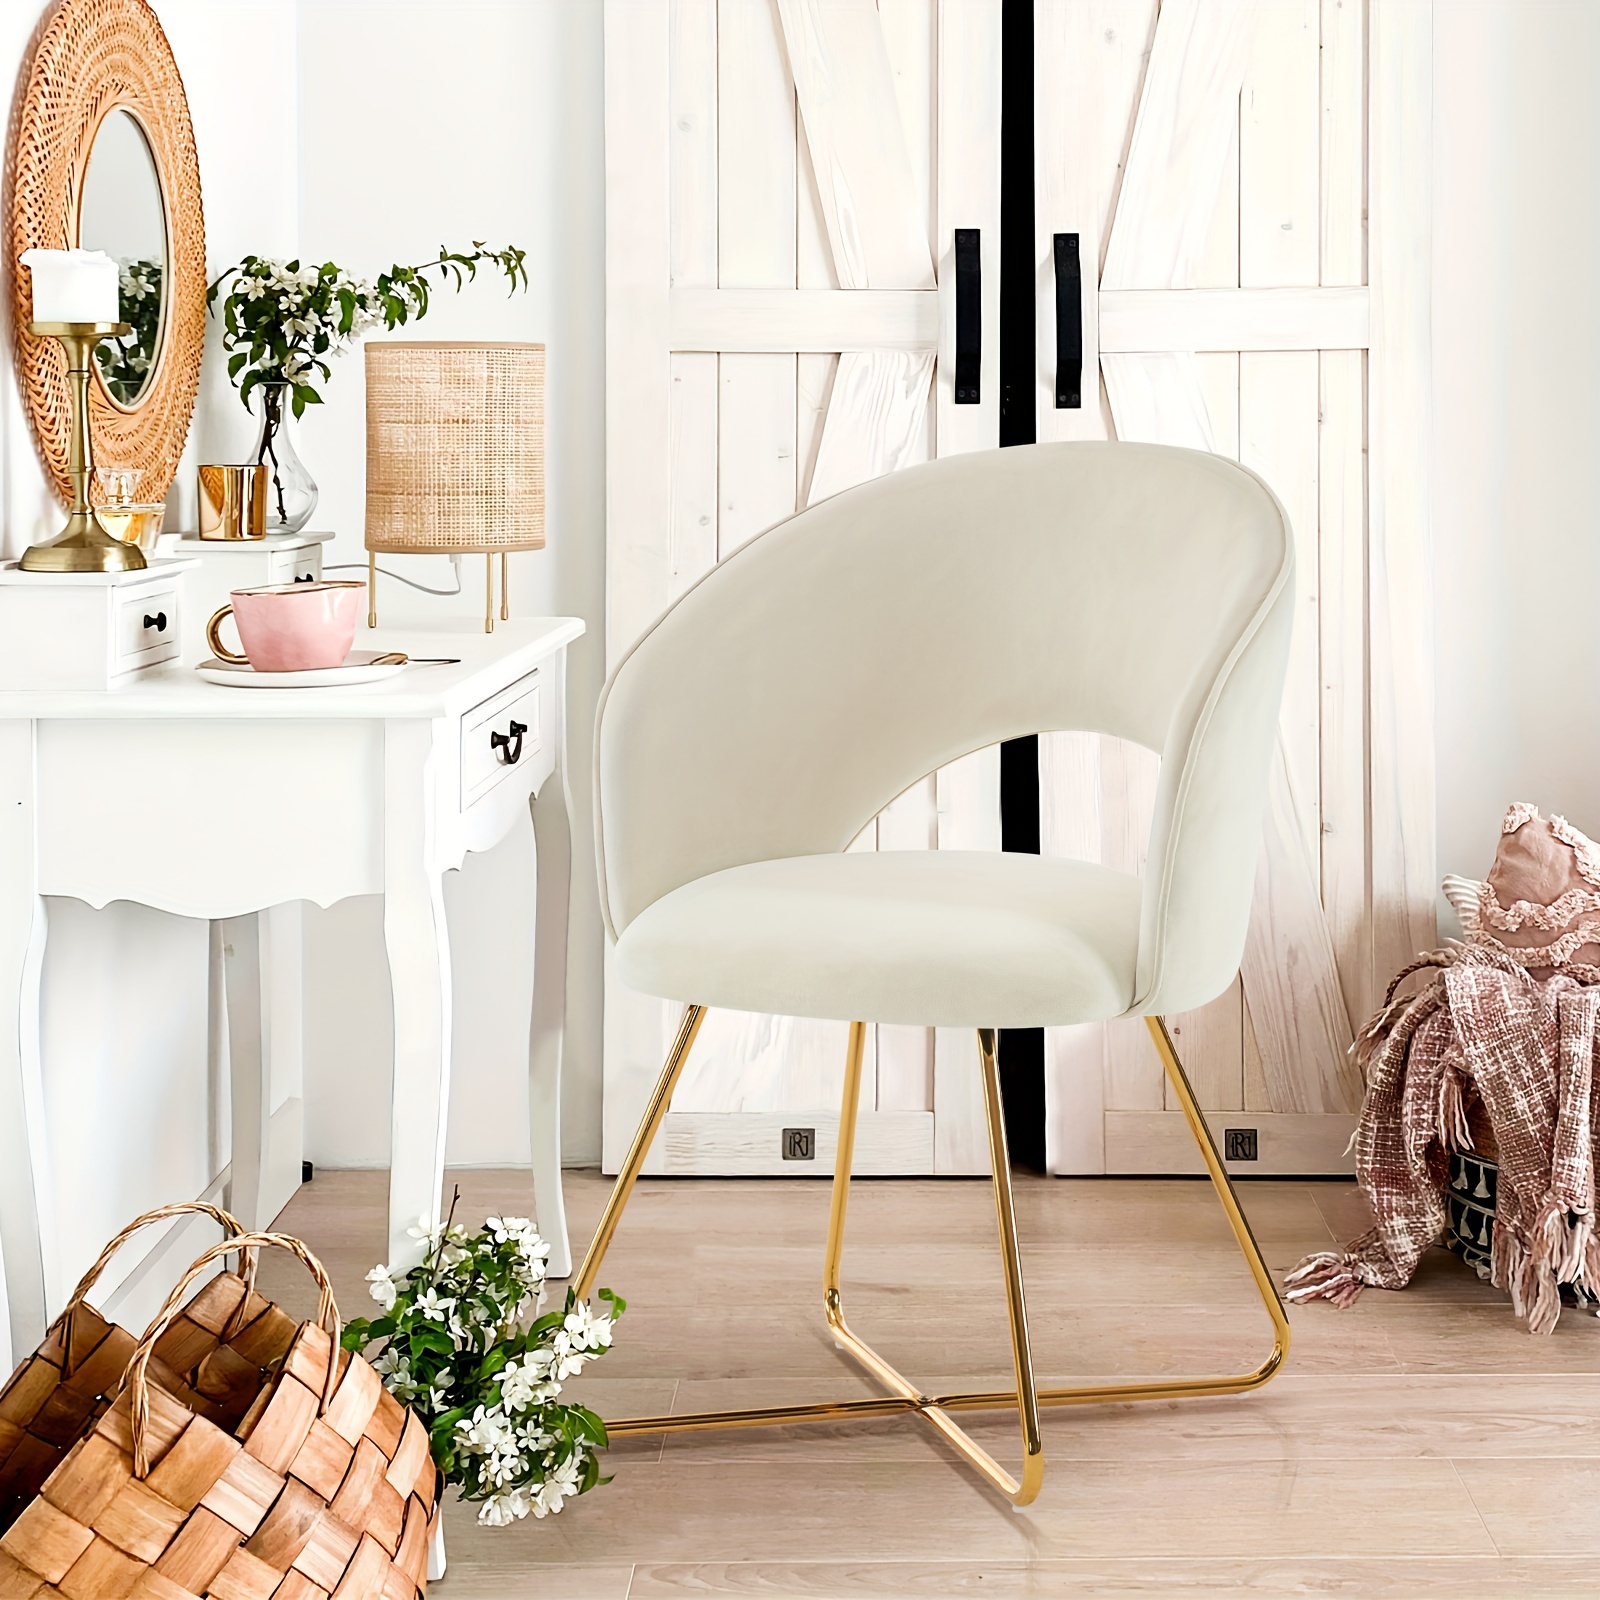 

Dressing Chair Leisure Chair Gold-plated Cross Stool Leg Design Hollow Back Shape Velvet Living Room Bedroom Dressing Table Available